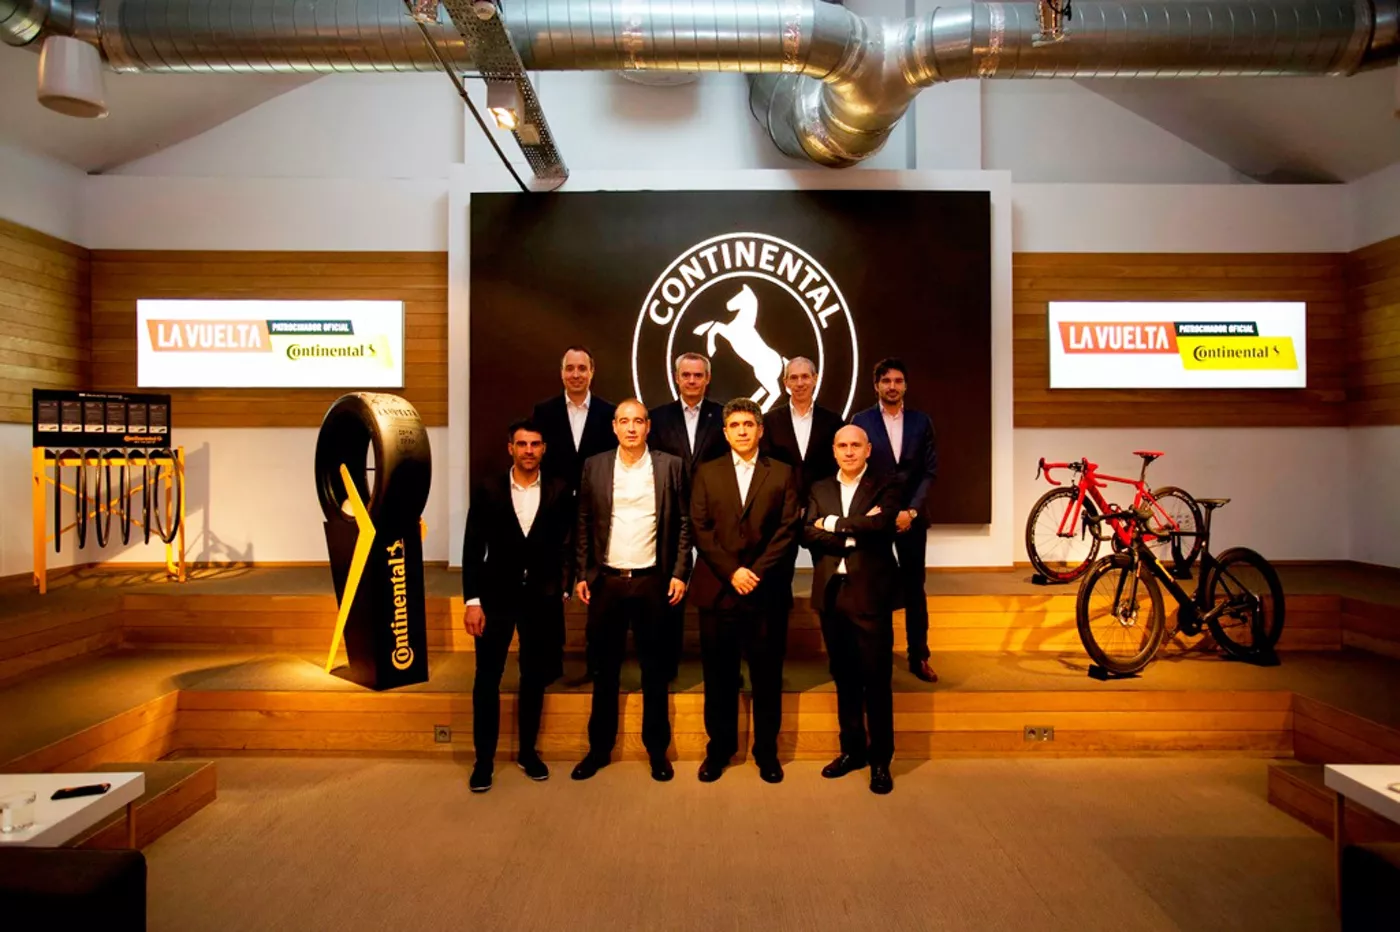 Continental patrocinador oficial de La Vuelta en su compromiso con la seguridad vial